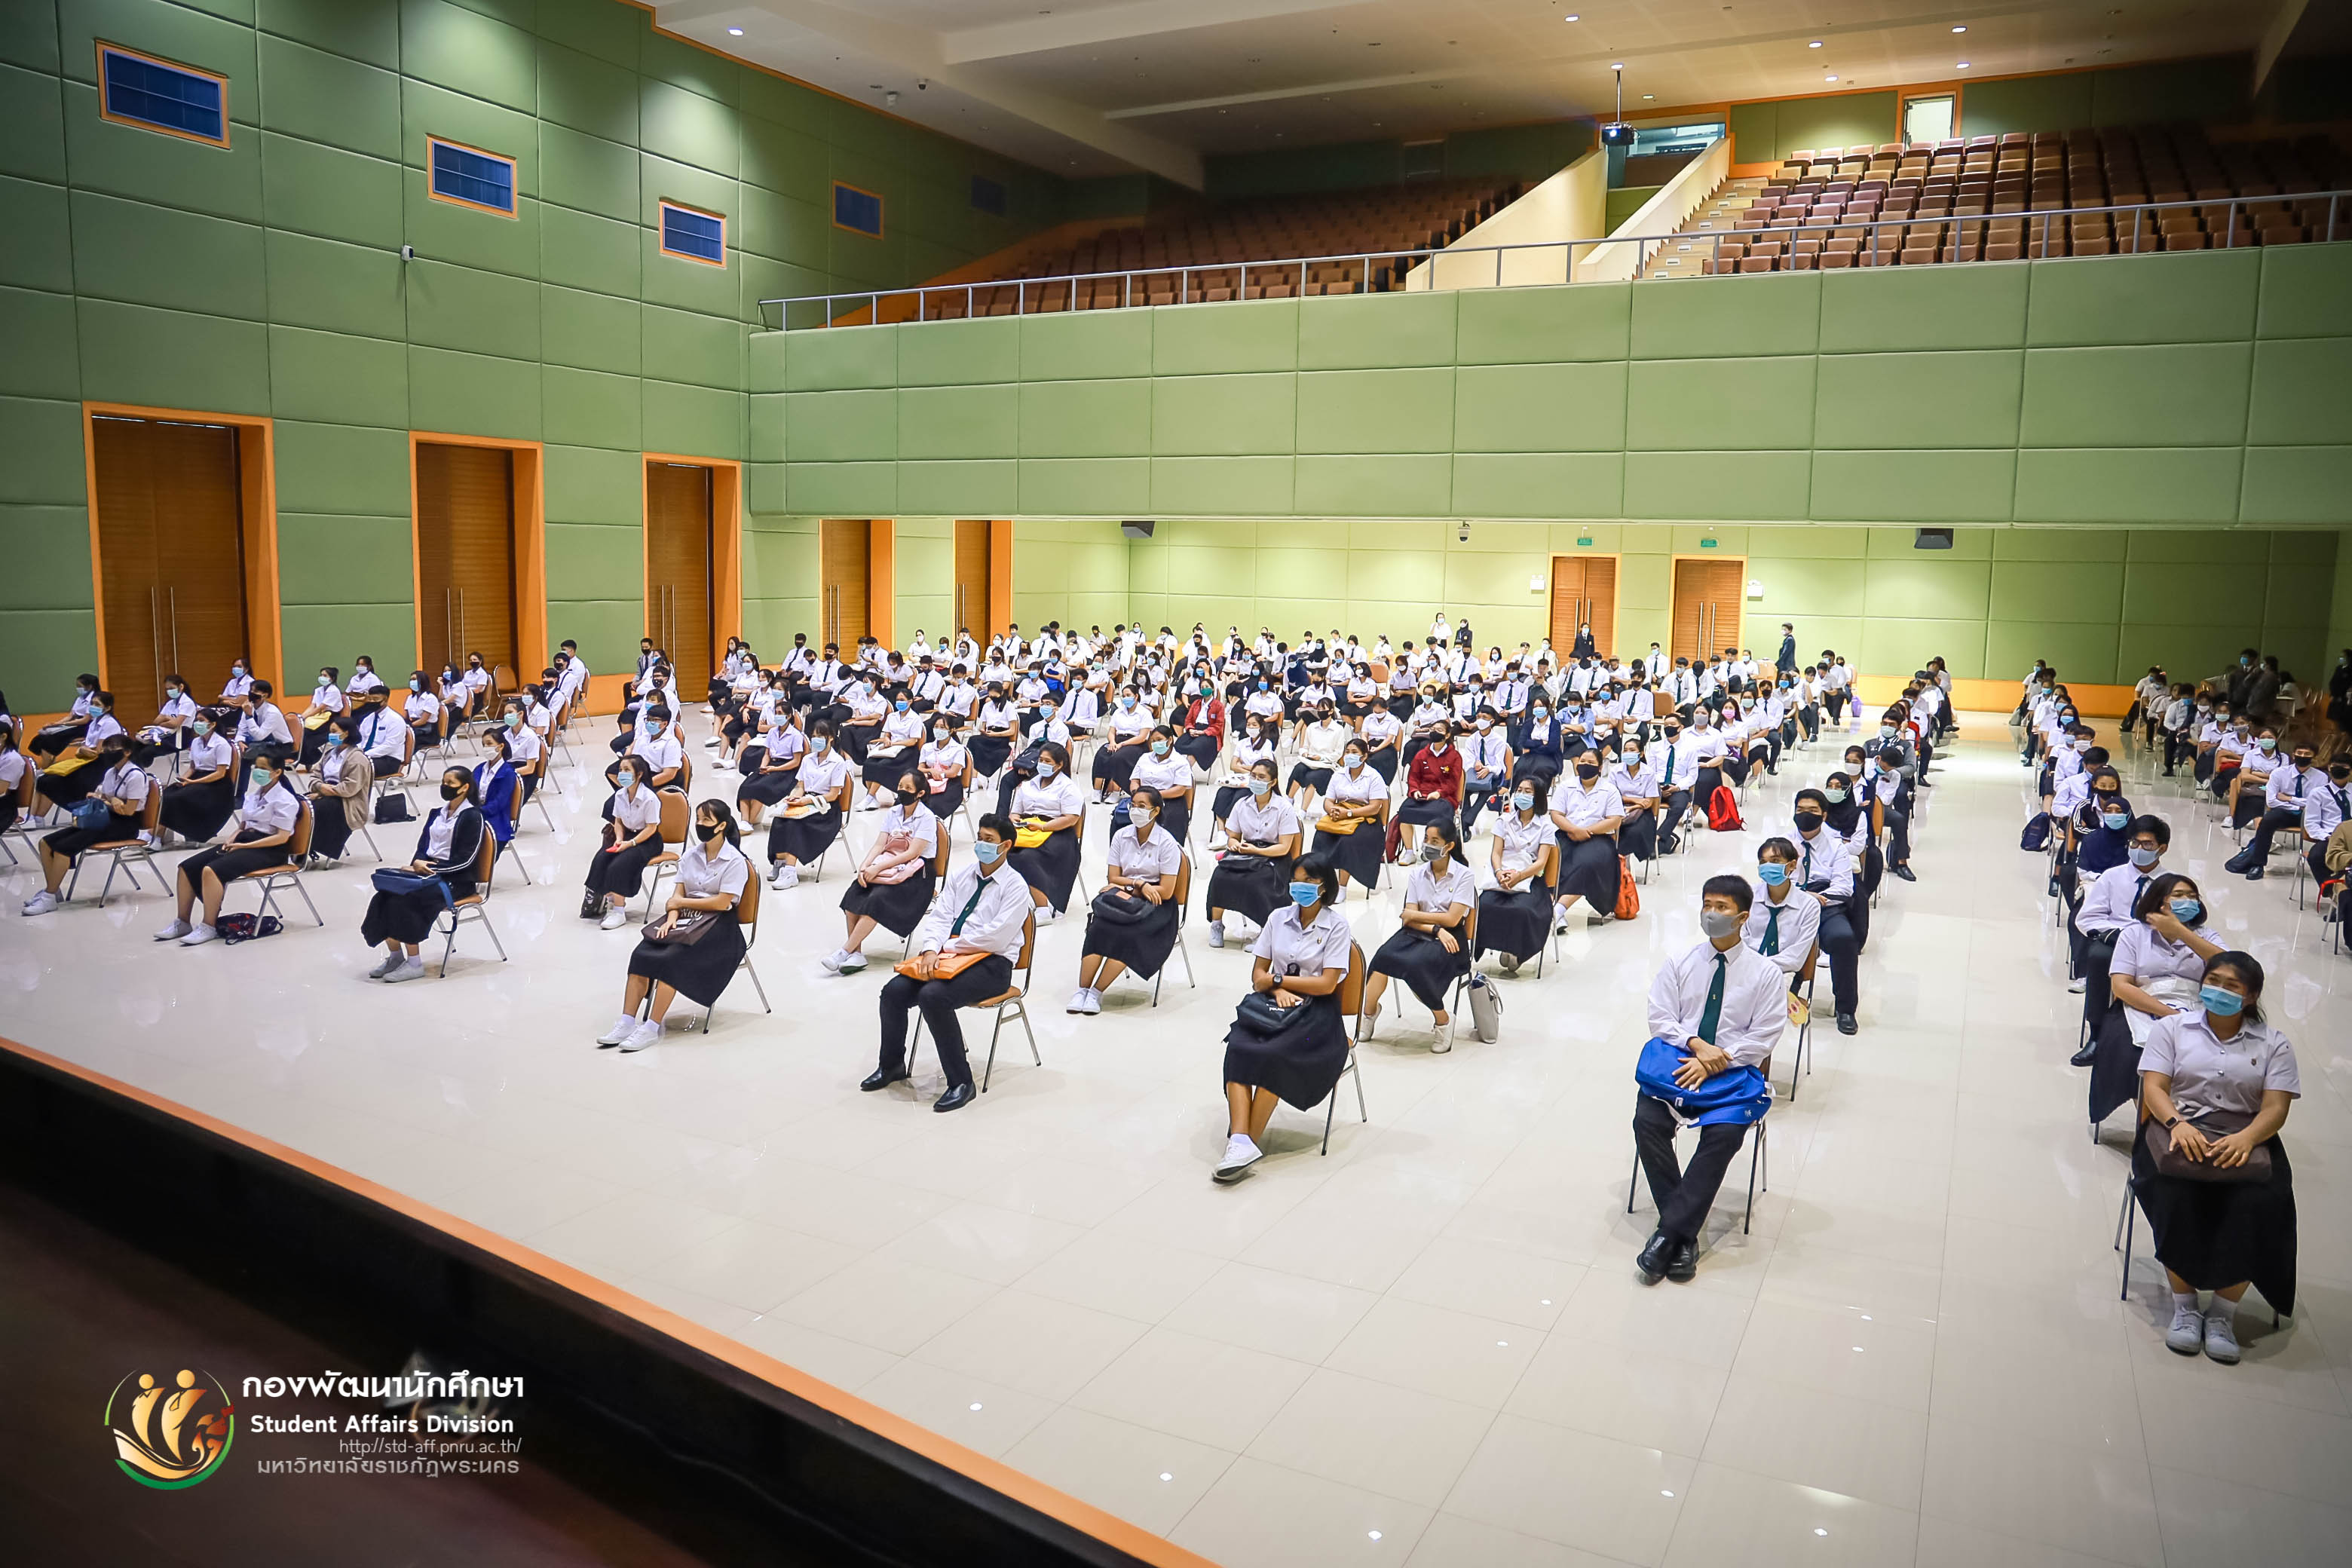 22 กรกฎาคม 2563 กองพัฒนานักศึกษา มหาวิทยาลัยราชภัฏพระนคร จัดให้มีการจัดกิจกรรมเพาะกล้ากาซะลอง 63 รุ่นที่ 3 ประจำปีการศึกษา 2563 ณ หอประชุมภัทรมหาราช